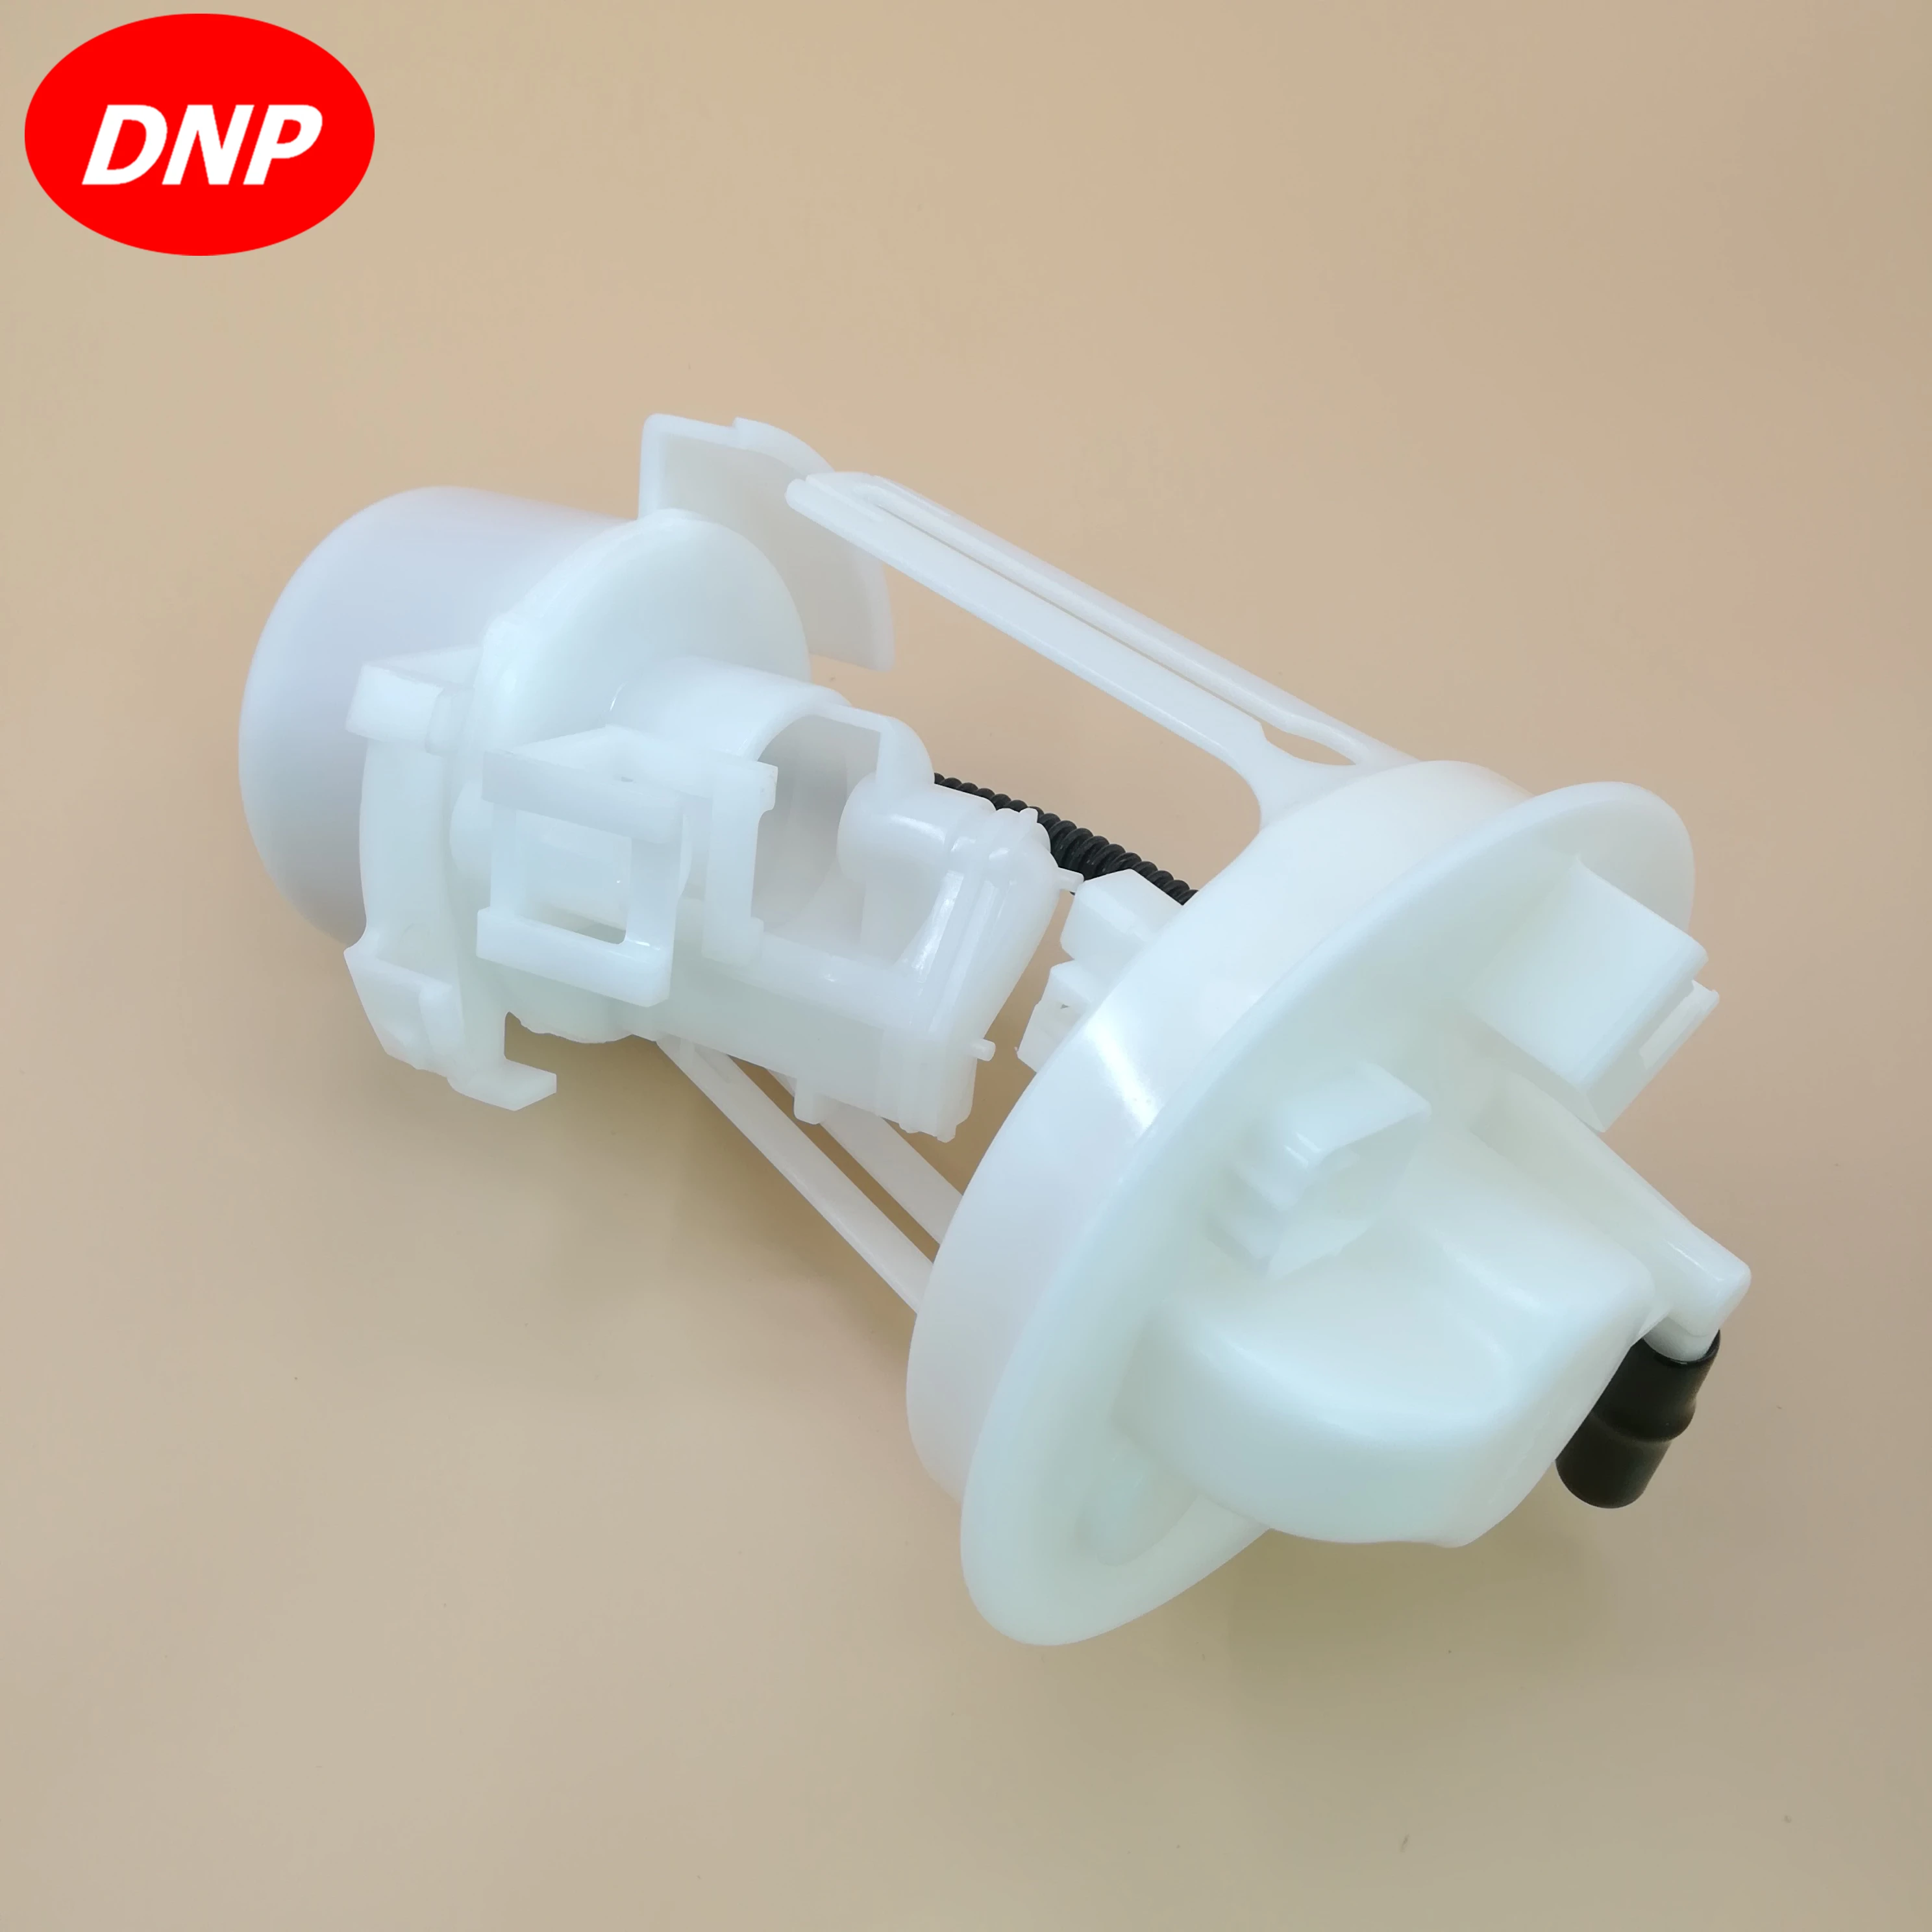 DNP топливные фильтры подходят для Mazda M6 LF17-13-35ZA